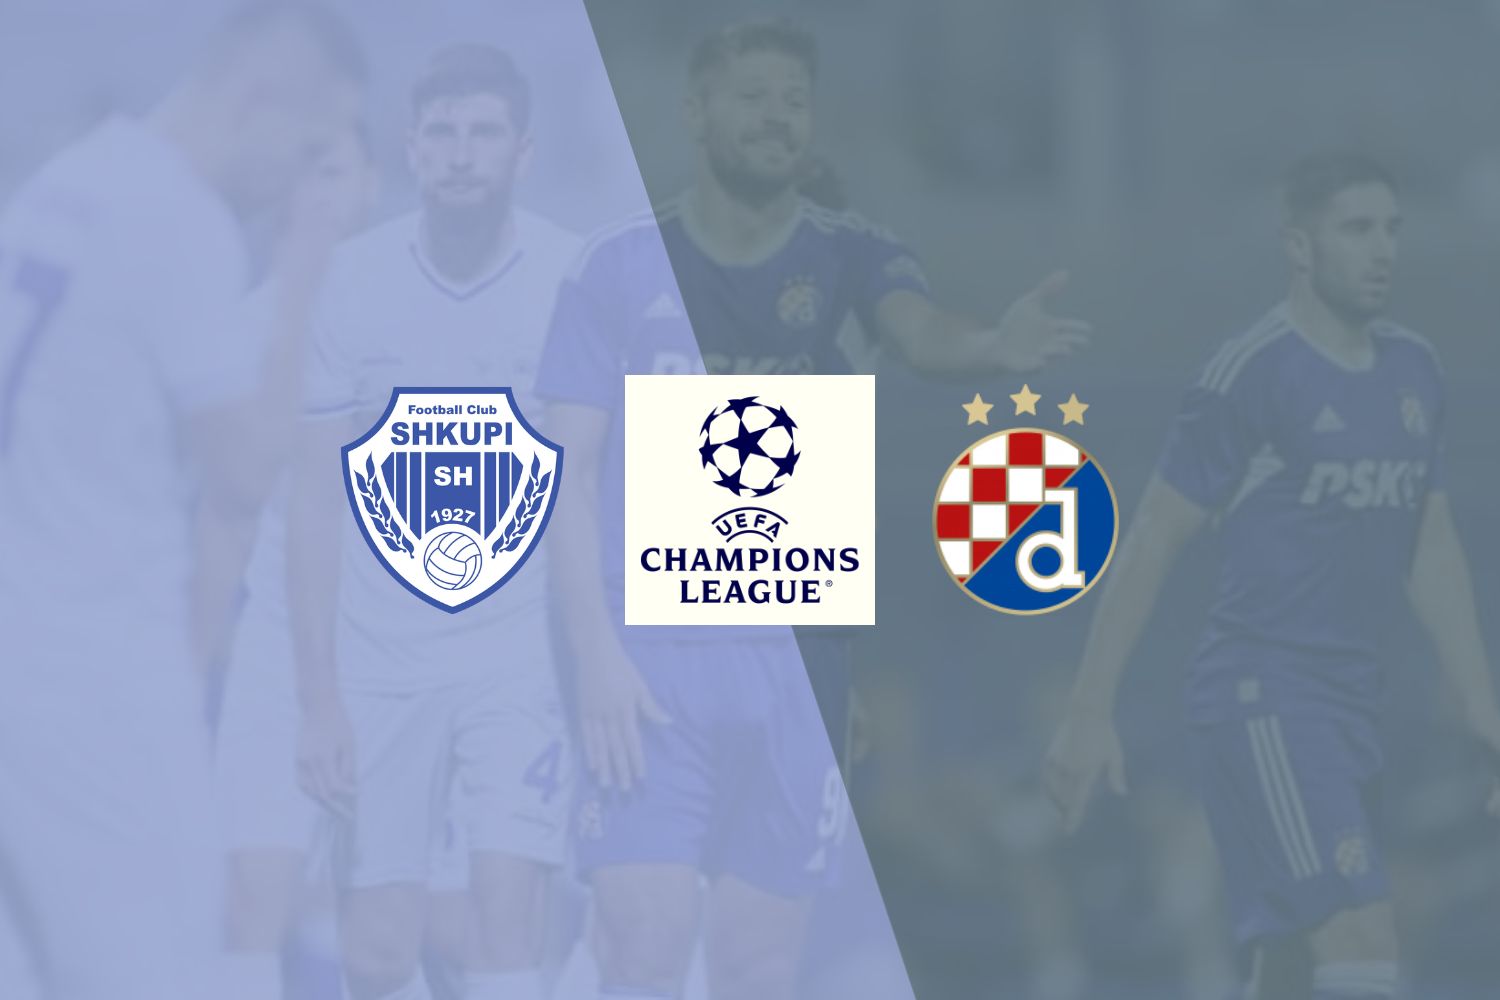 Dinamo Zagreb vs Hajduk Split Preview & Prediction